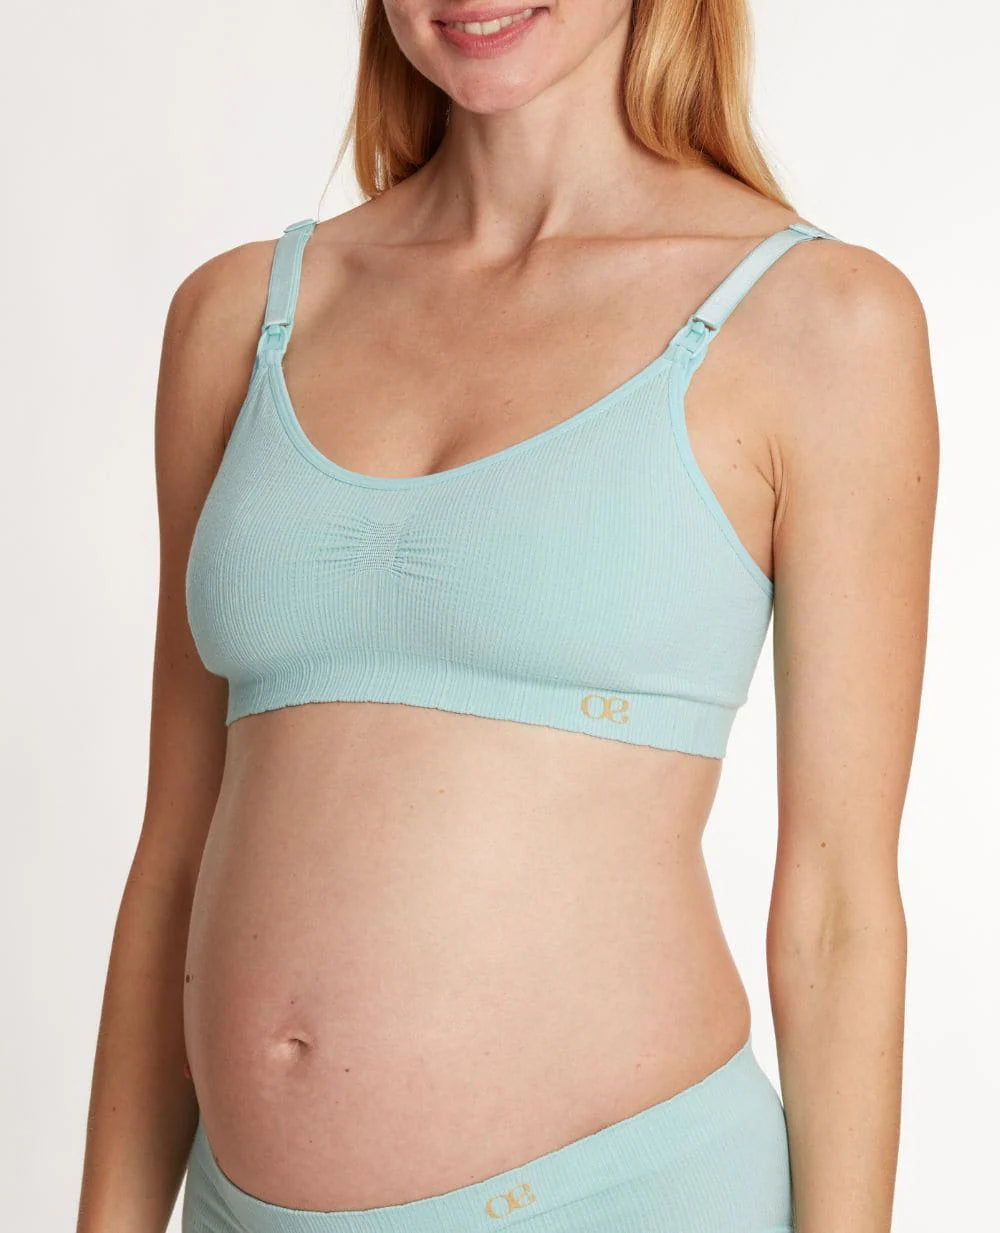 Zoé caledon pregnancy and nursing bra